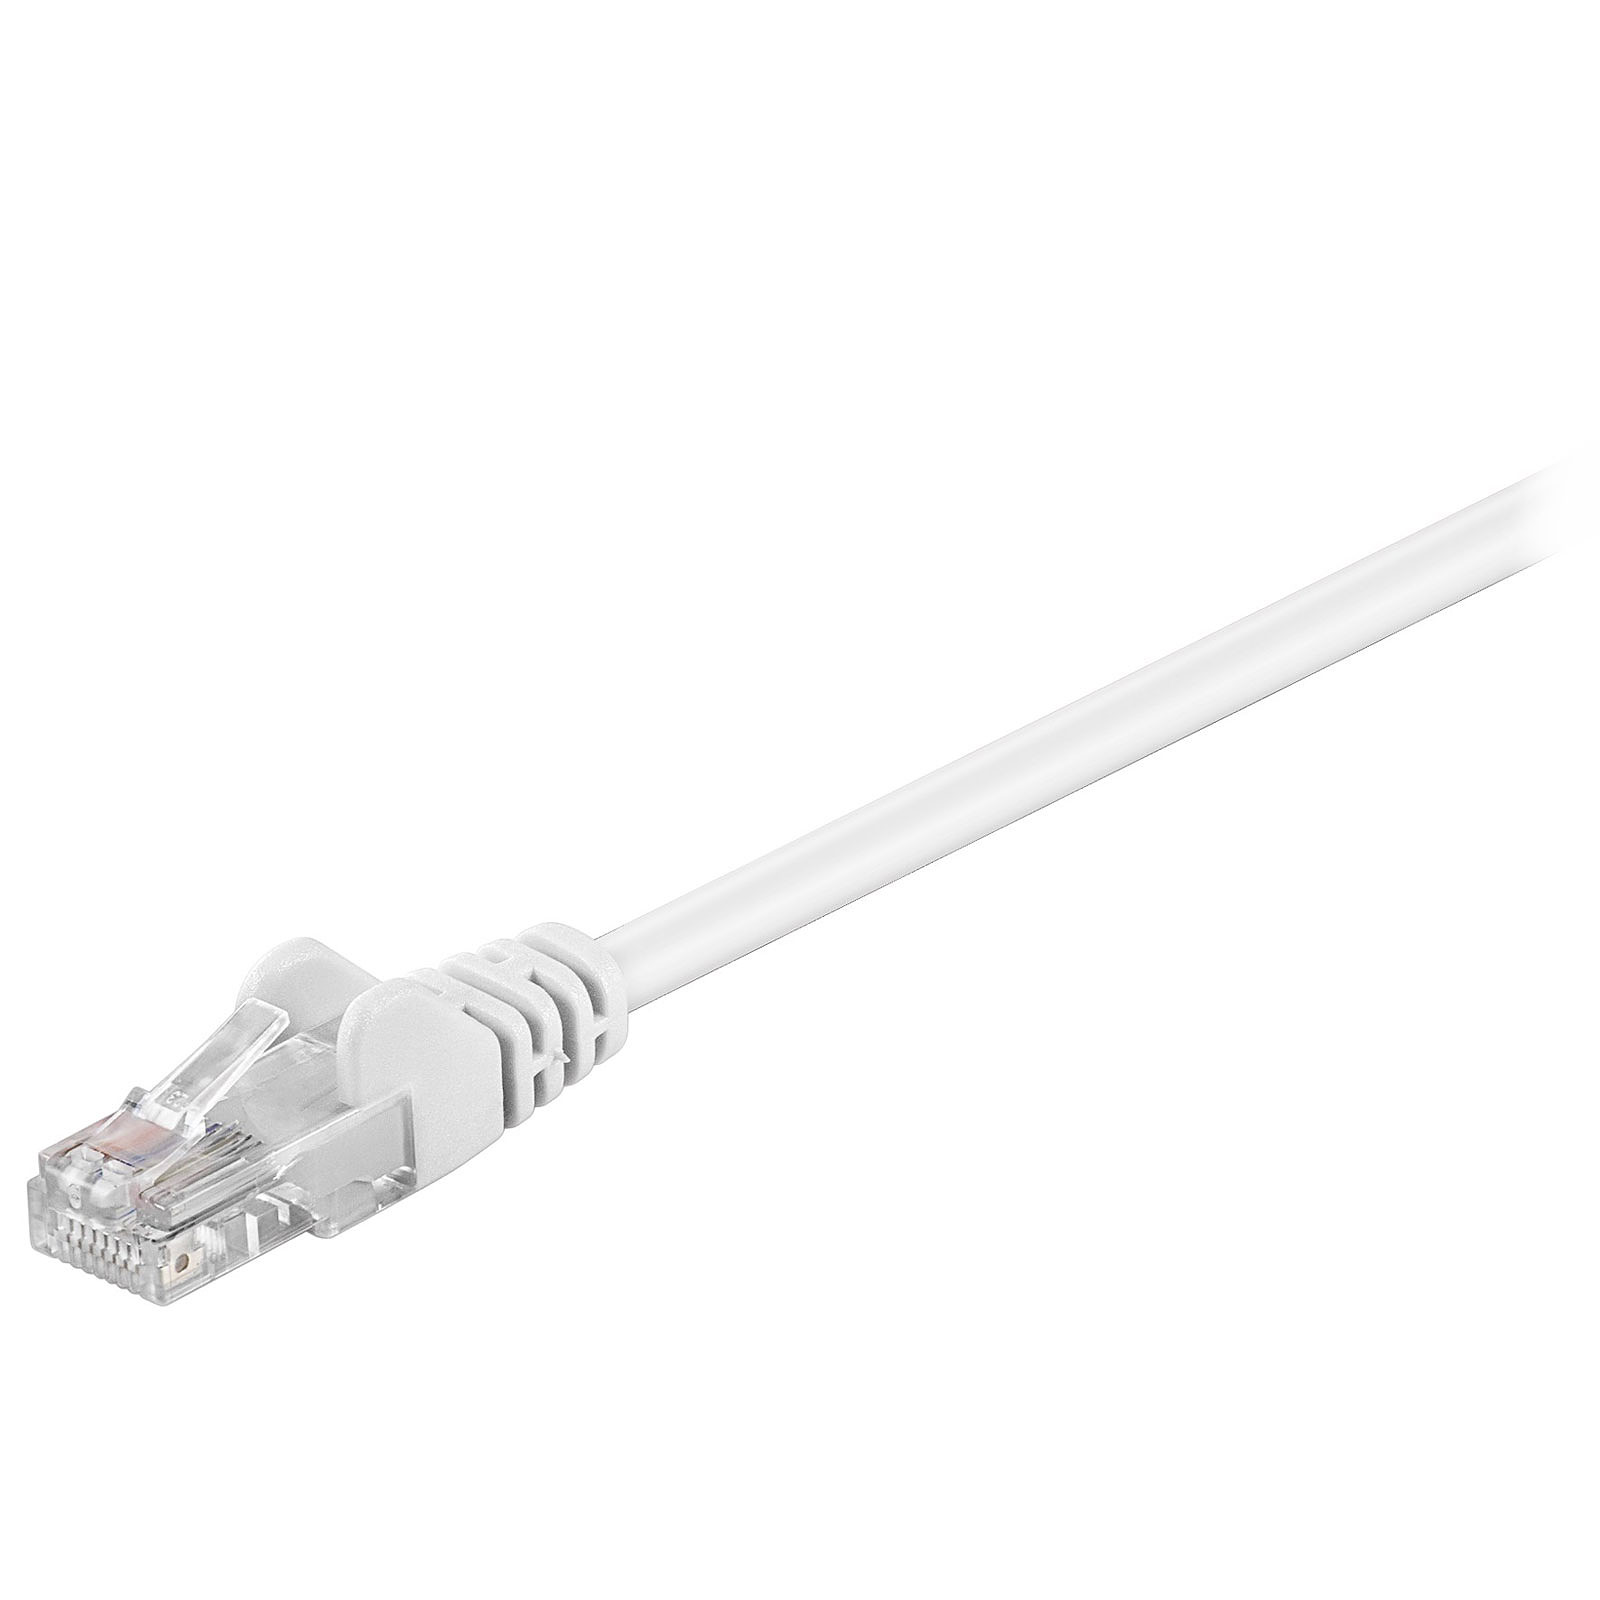 Cable RJ45 categorie 5e U/UTP 0.5 m (Blanc) - Cable RJ45 Generique